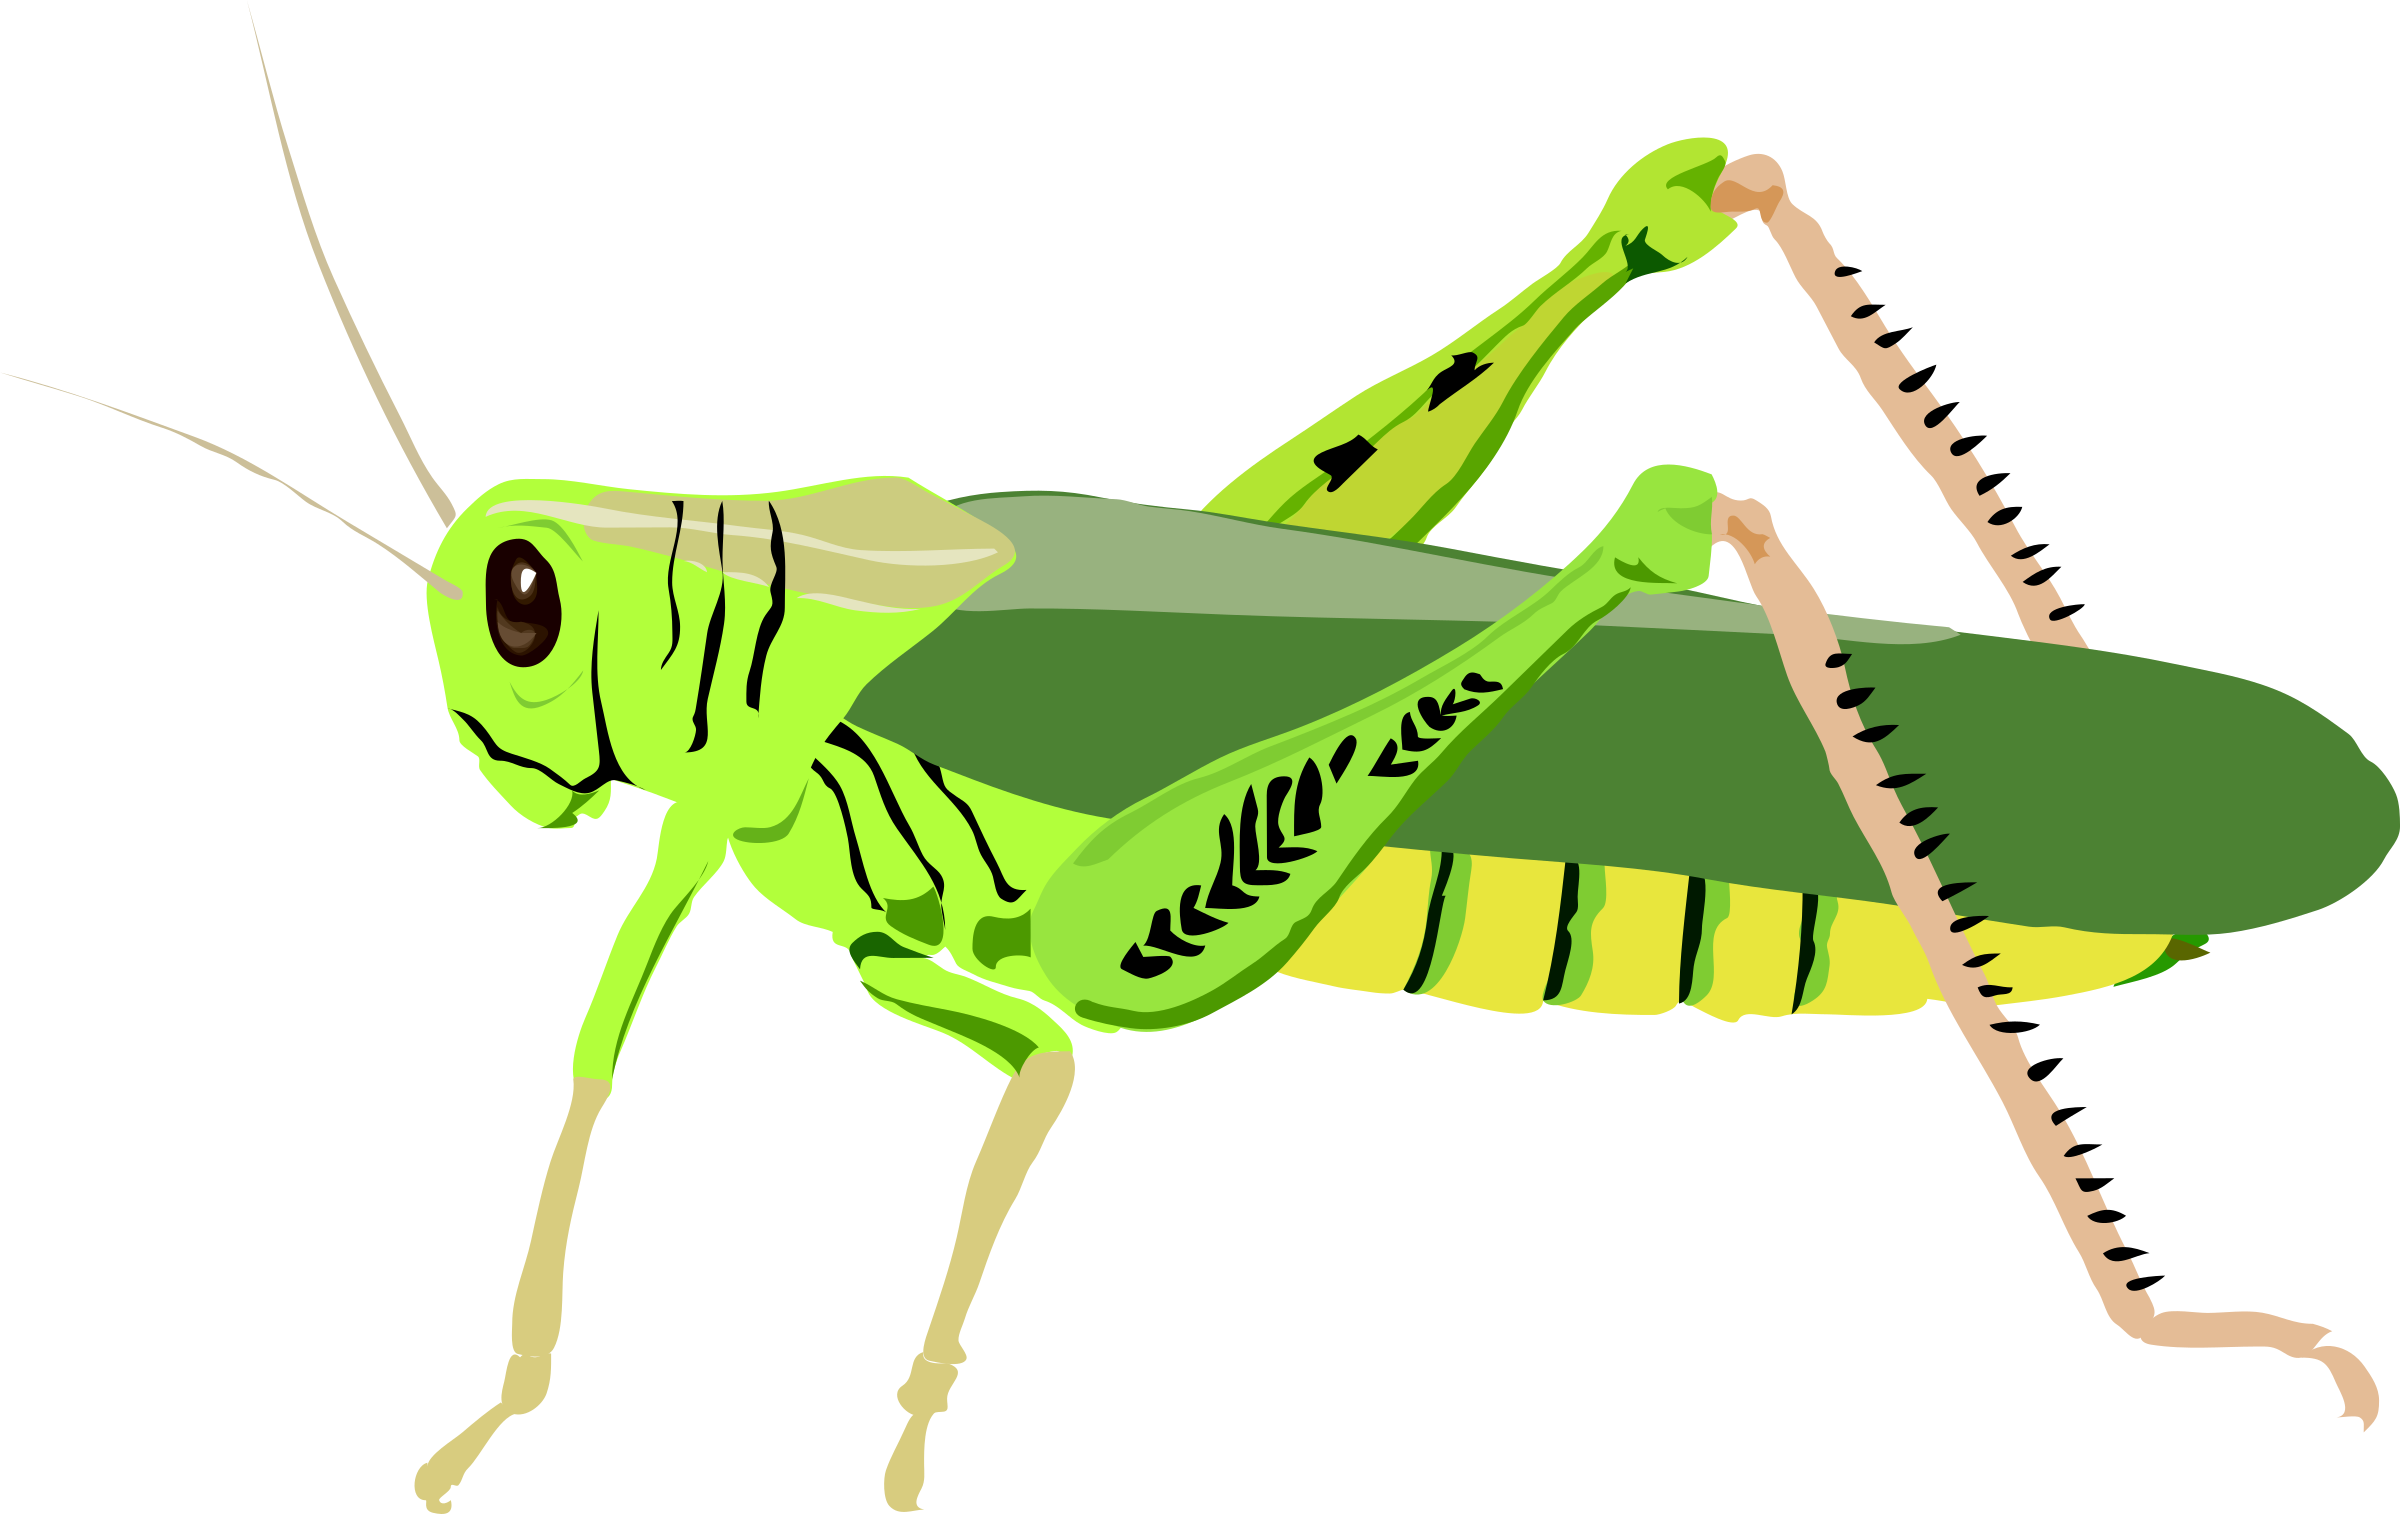 Grasshopper clipart small. Architetto cavalletta big image